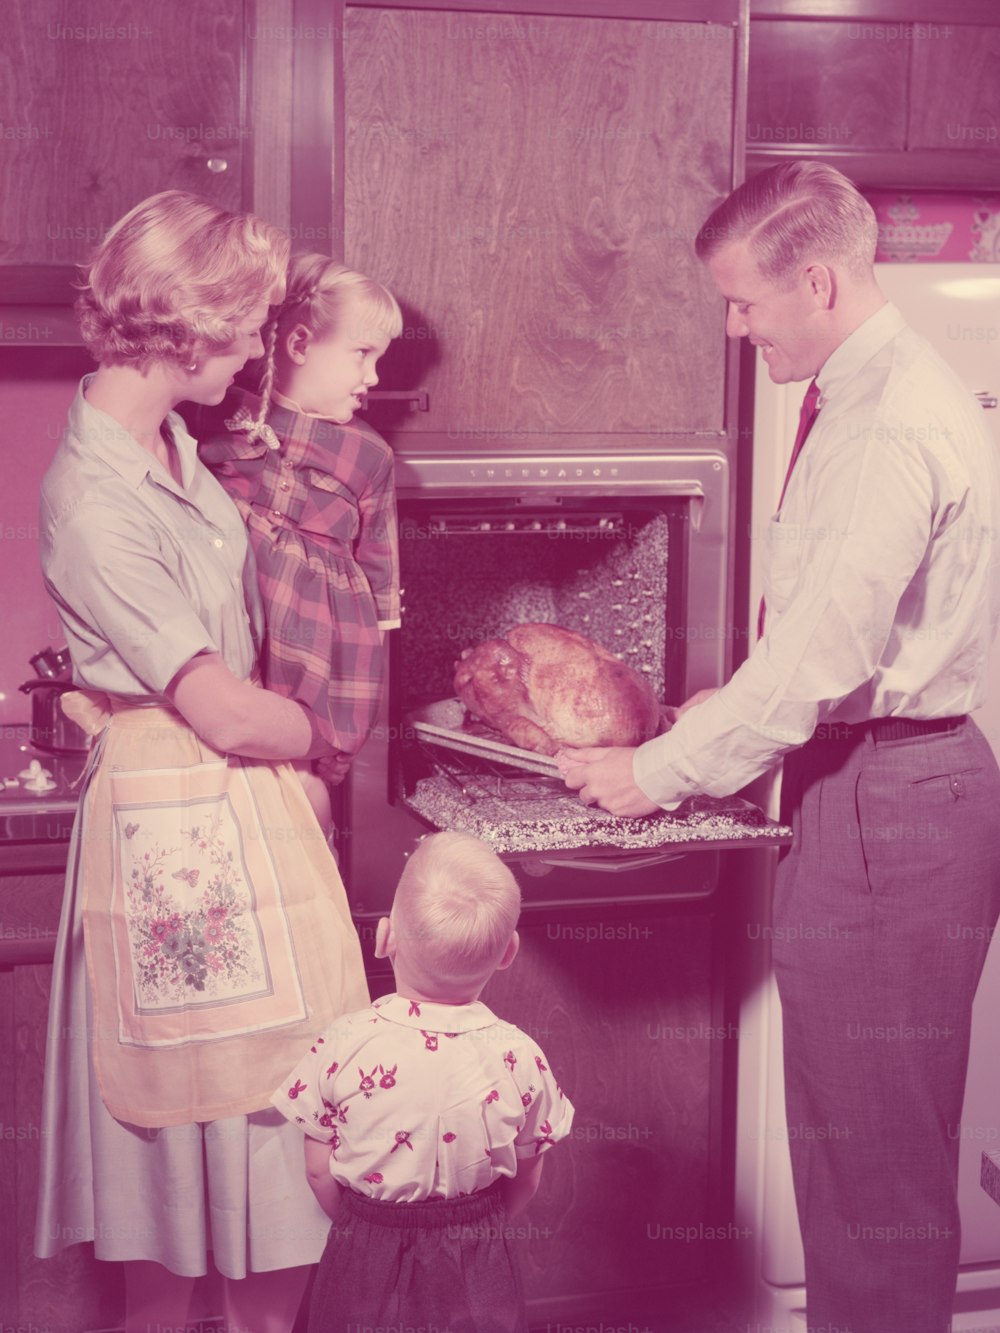 ÉTATS-UNIS - Vers les années 1950 : Famille dans la cuisine, père sortant la dinde rôtie du four, mère et enfants regardant.